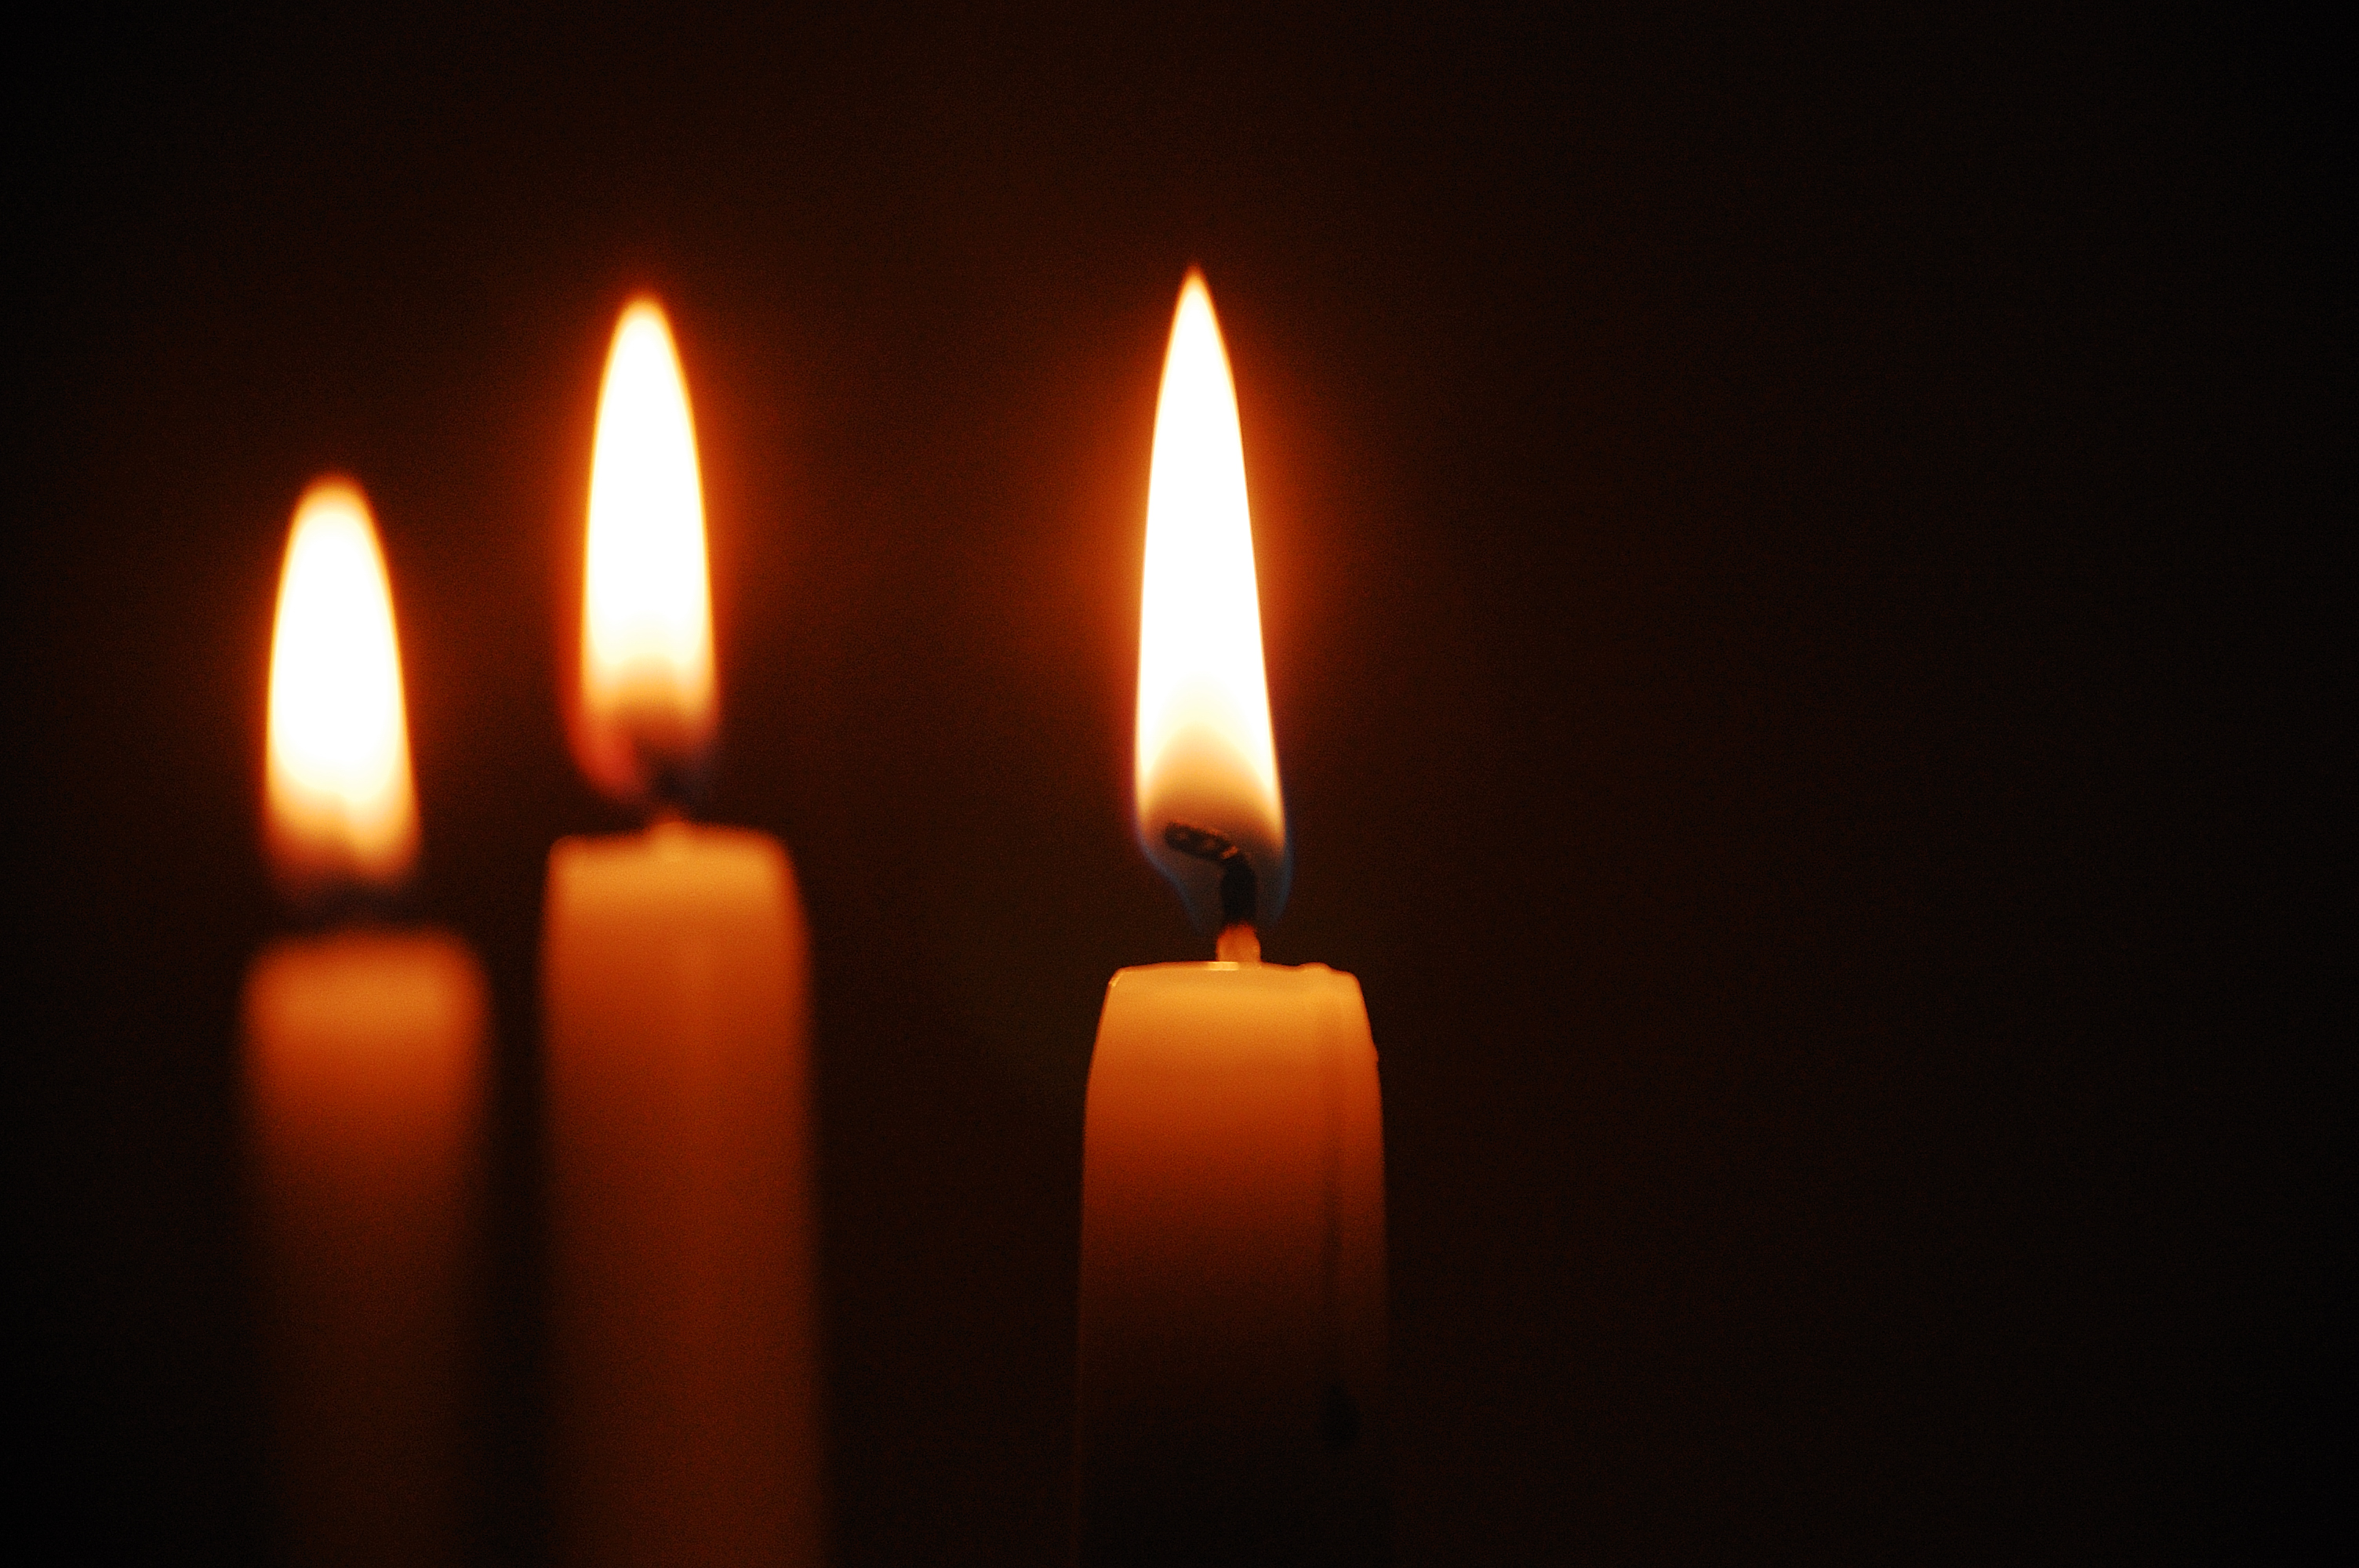 Горят три свечи. Горящие свечи. Церковные свечи. Свечи в церкви. Горящая свеча.